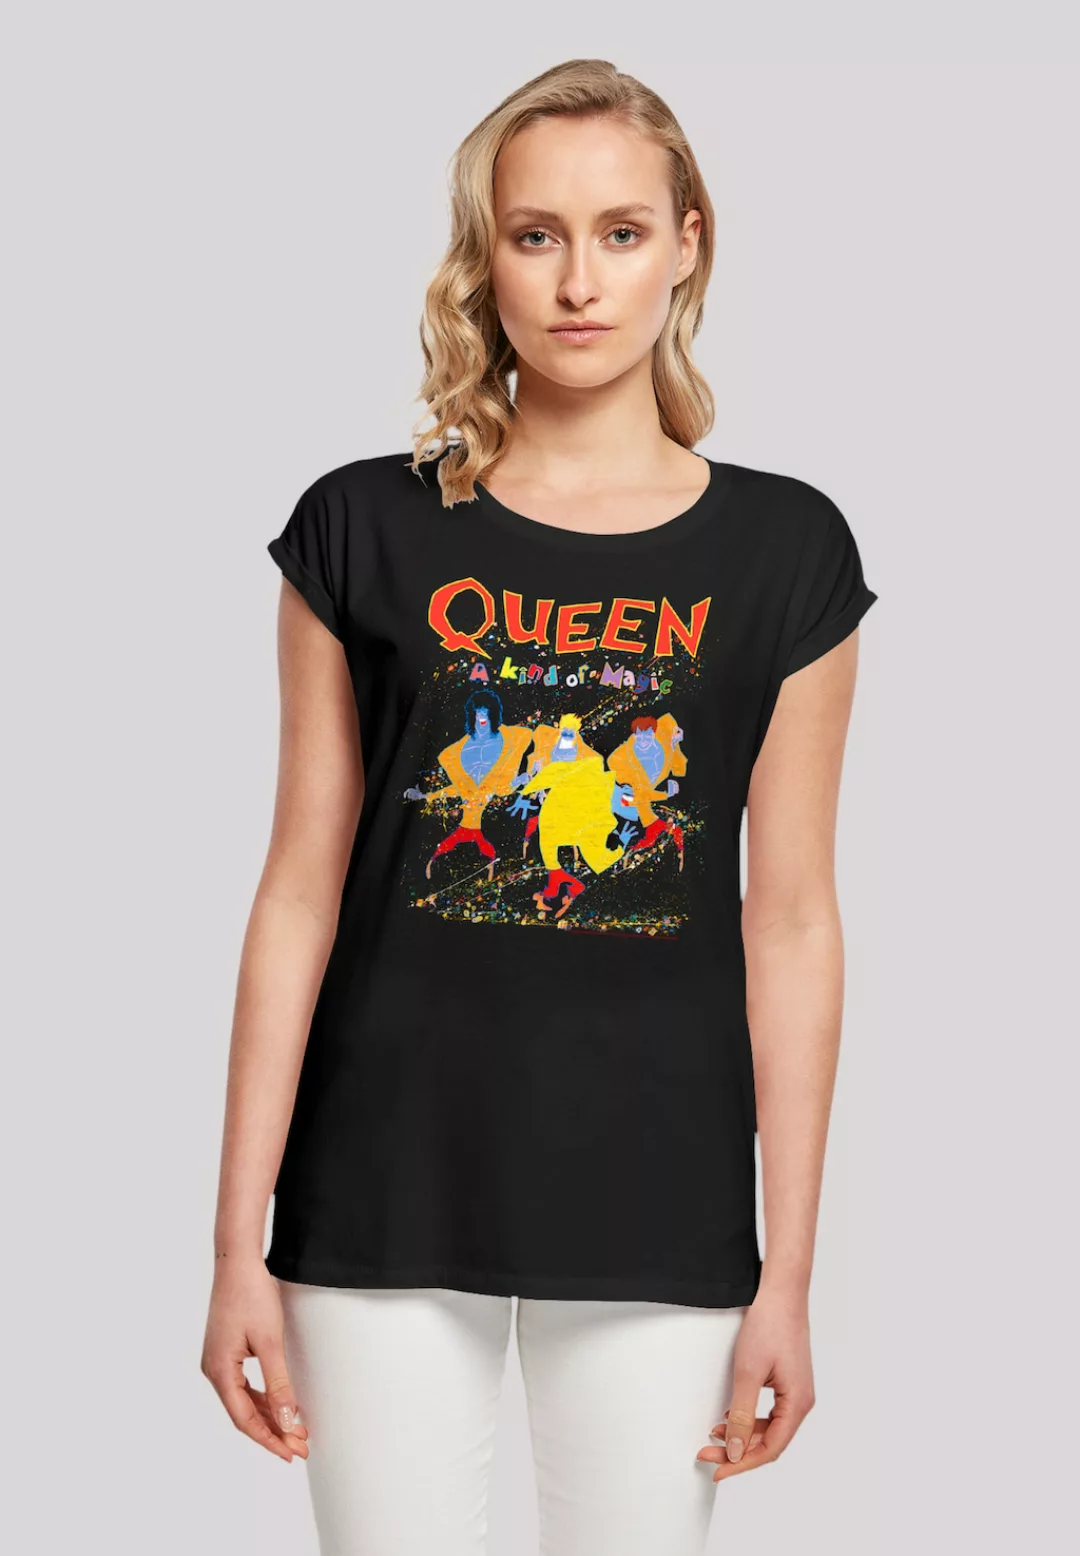 F4NT4STIC T-Shirt "Queen Rock Band A Kind Of Magic", Premium Qualität günstig online kaufen